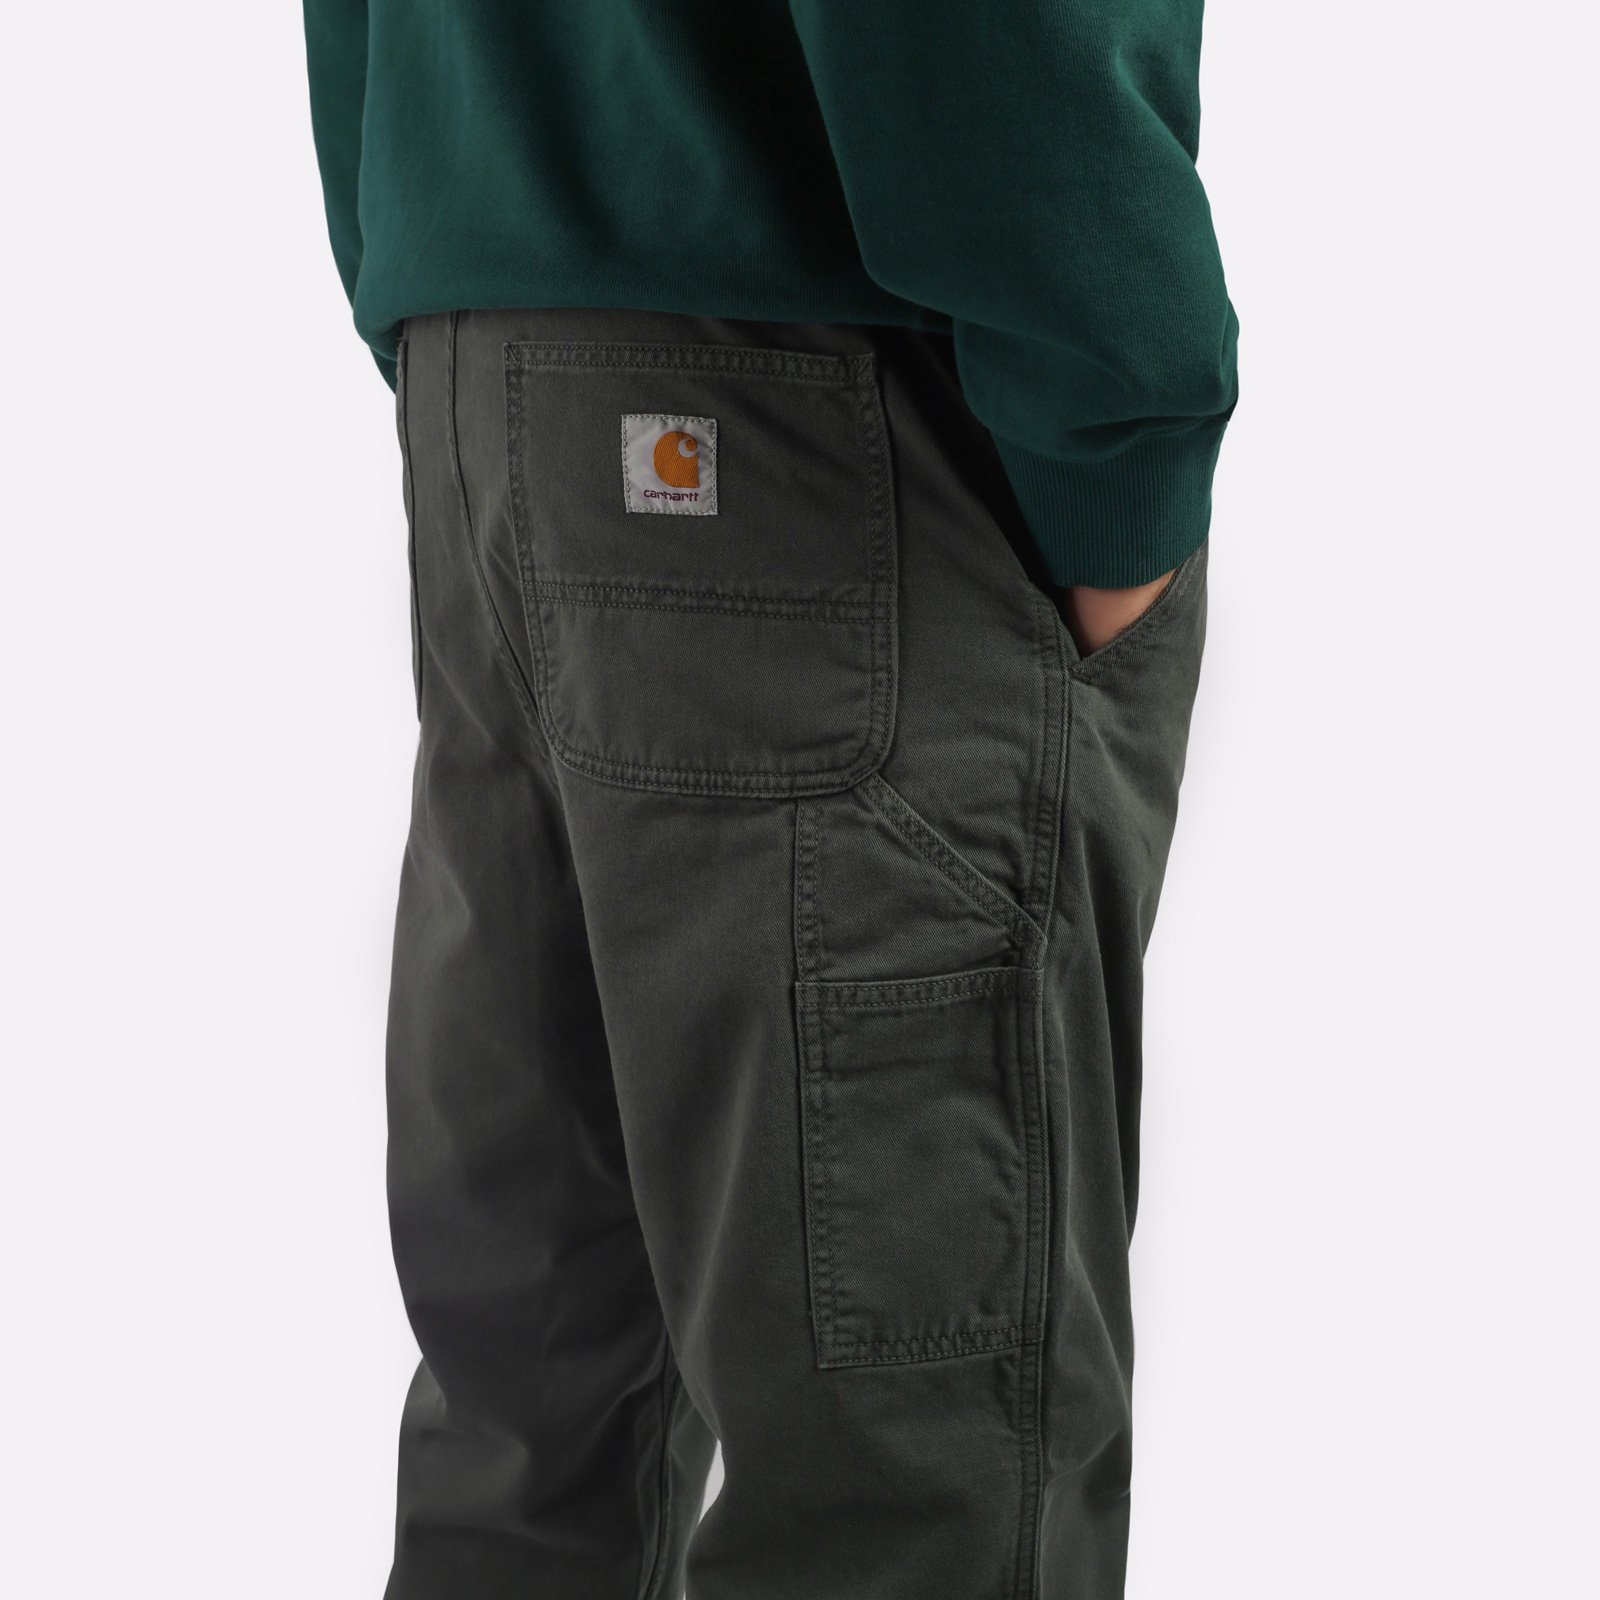 мужские брюки Carhartt WIP Flint Pant  (I029919-jura)  - цена, описание, фото 4